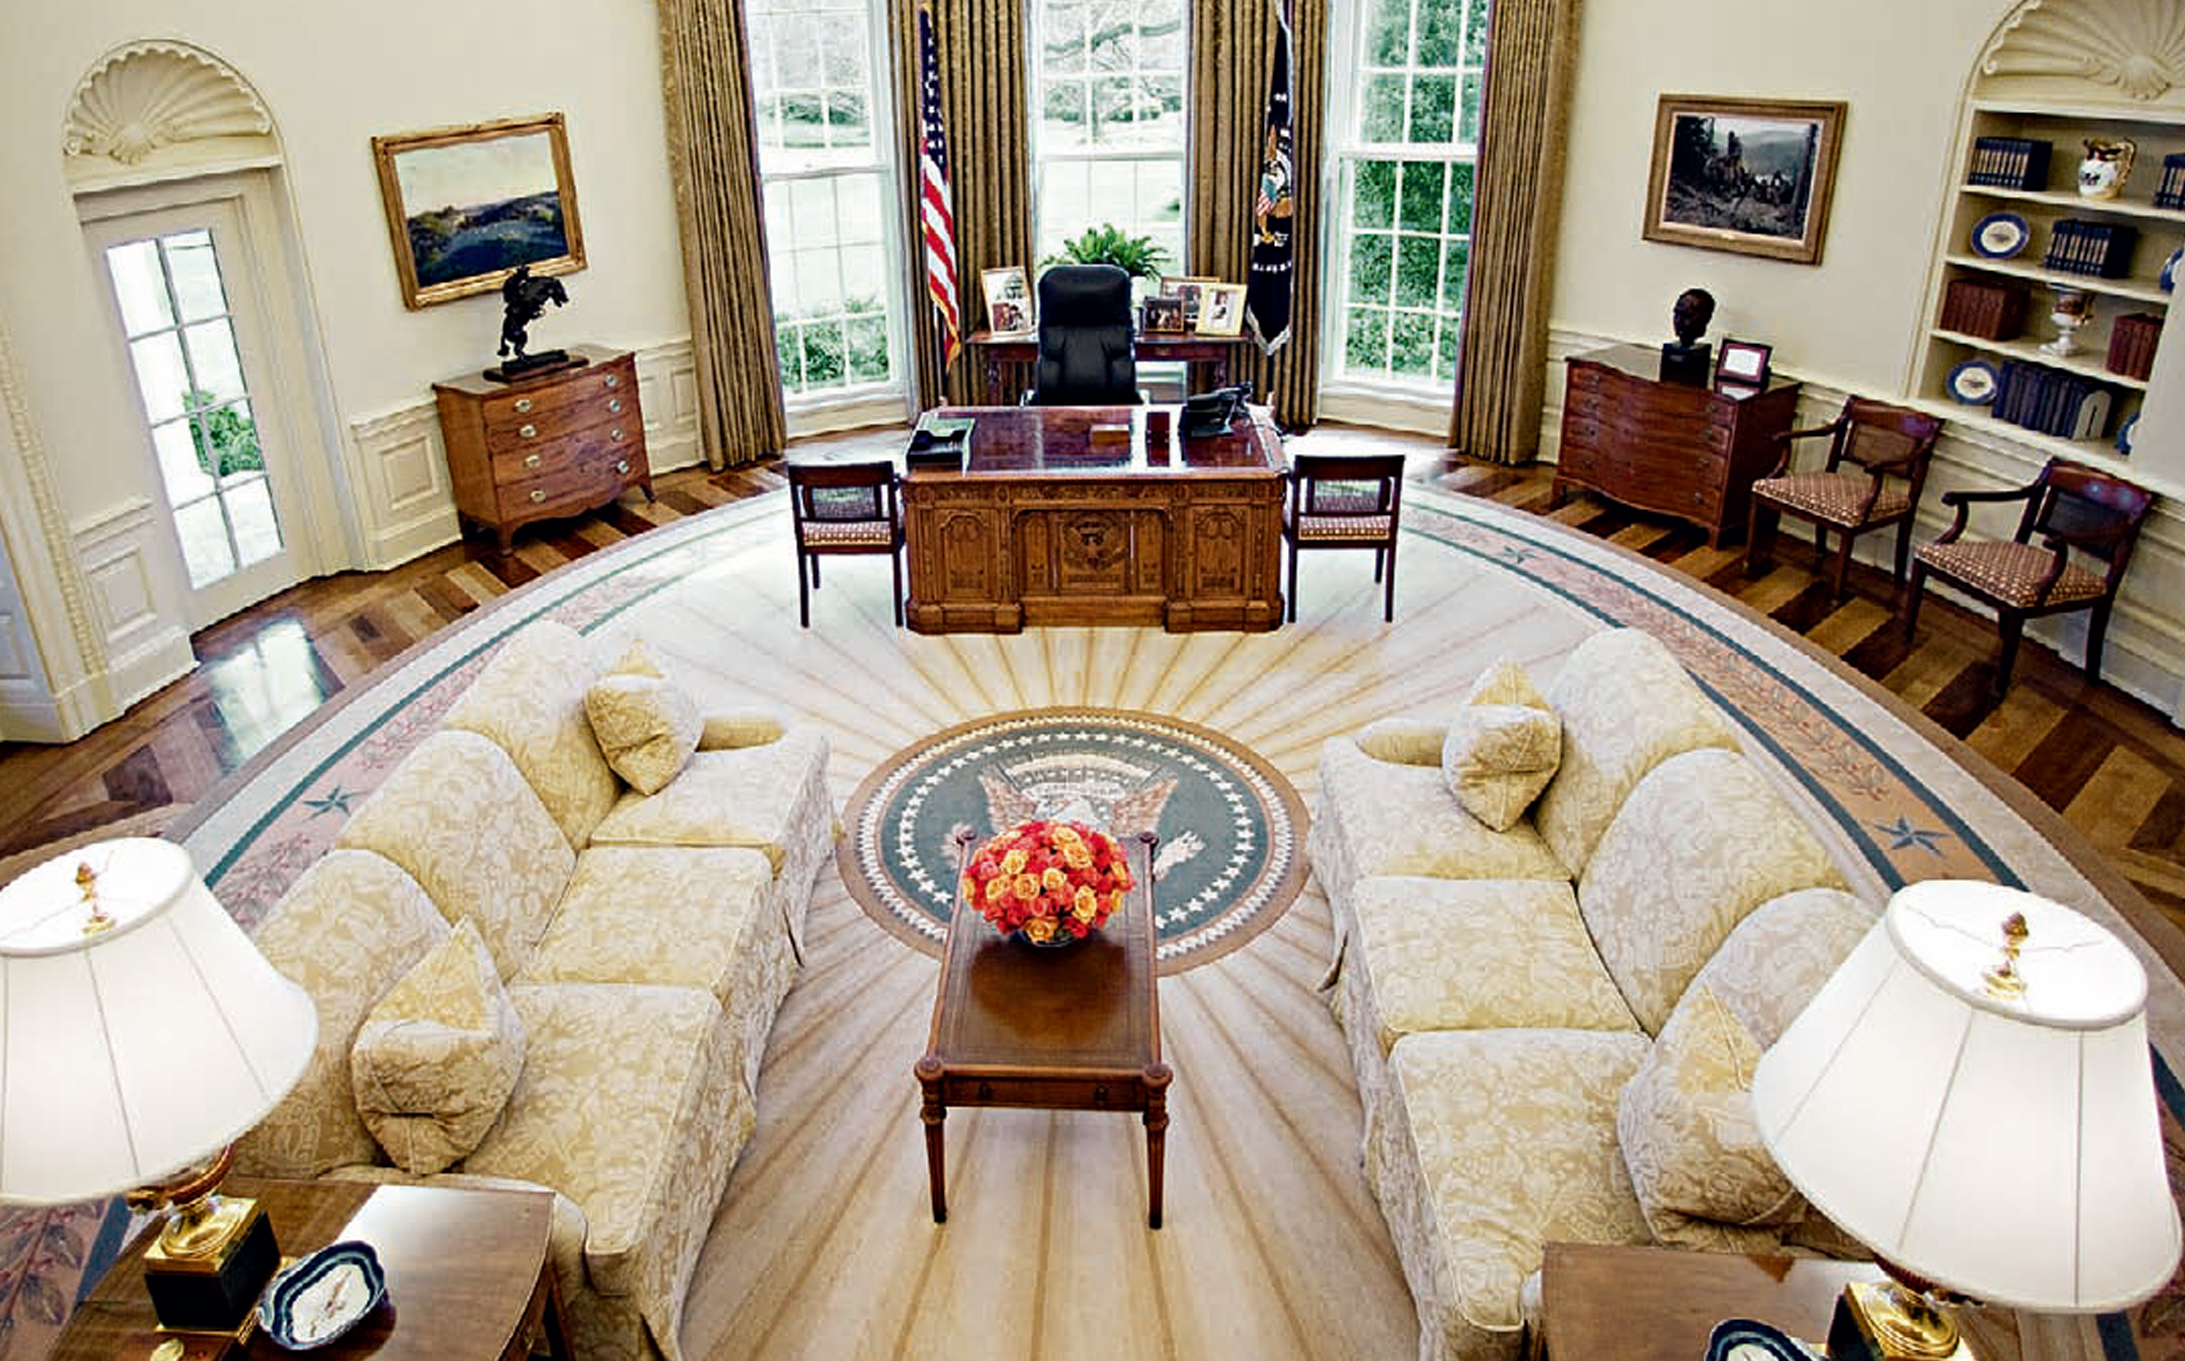 美国白宫背景墙图片